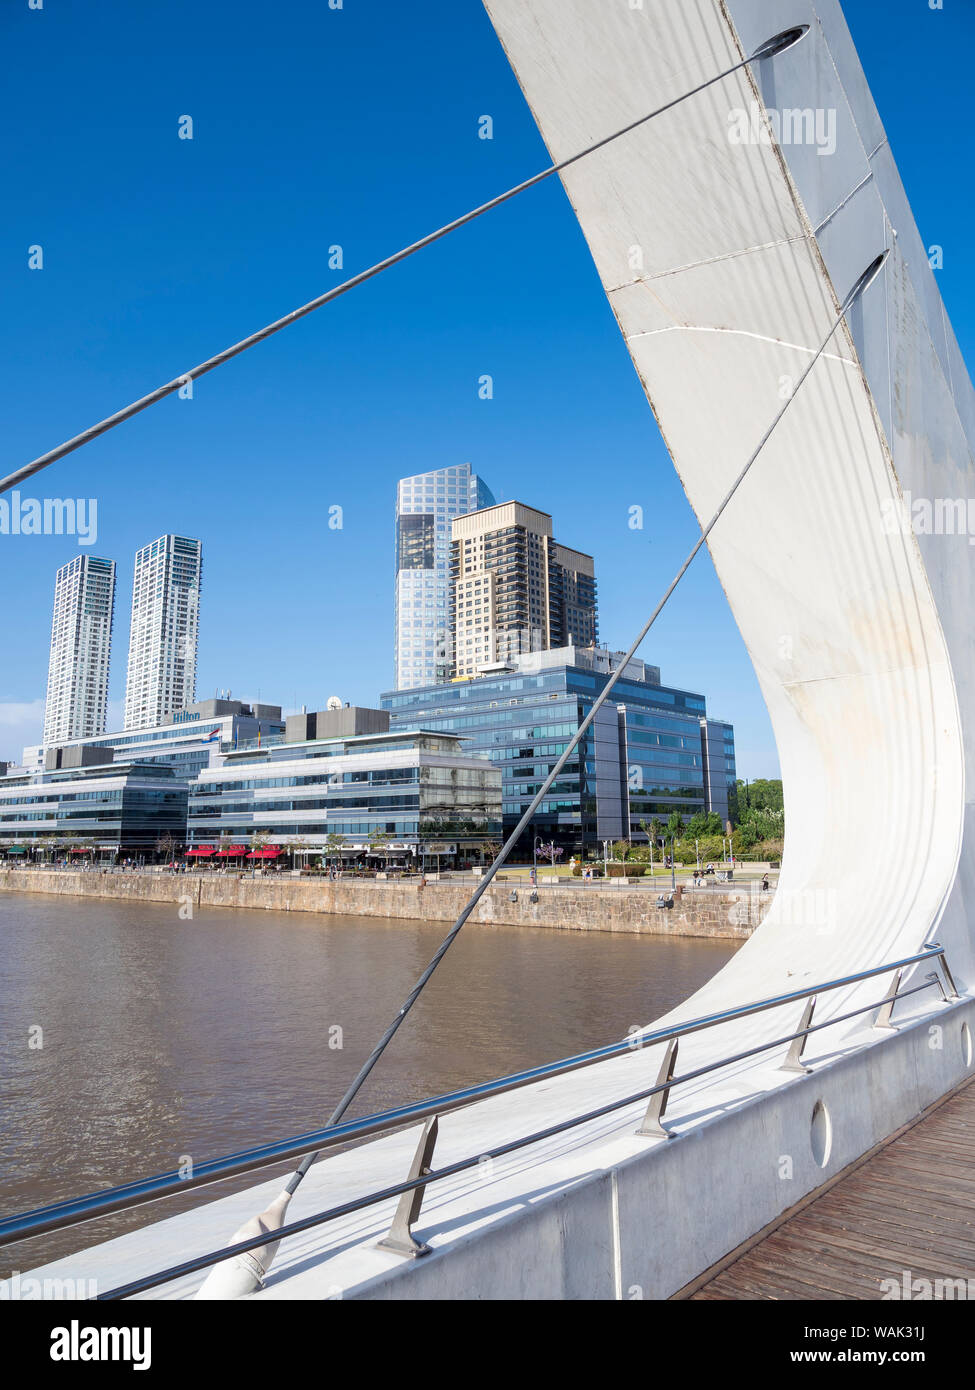 Puente de La Mujer, eine drehende Fußgängerbrücke, entworfen vom Architekten Santiago Calatrava. Puerto Madero, das moderne Leben Viertel um den alten Hafen von Buenos Aires. Südamerika, Argentinien. (Redaktionelle nur verwenden) Stockfoto